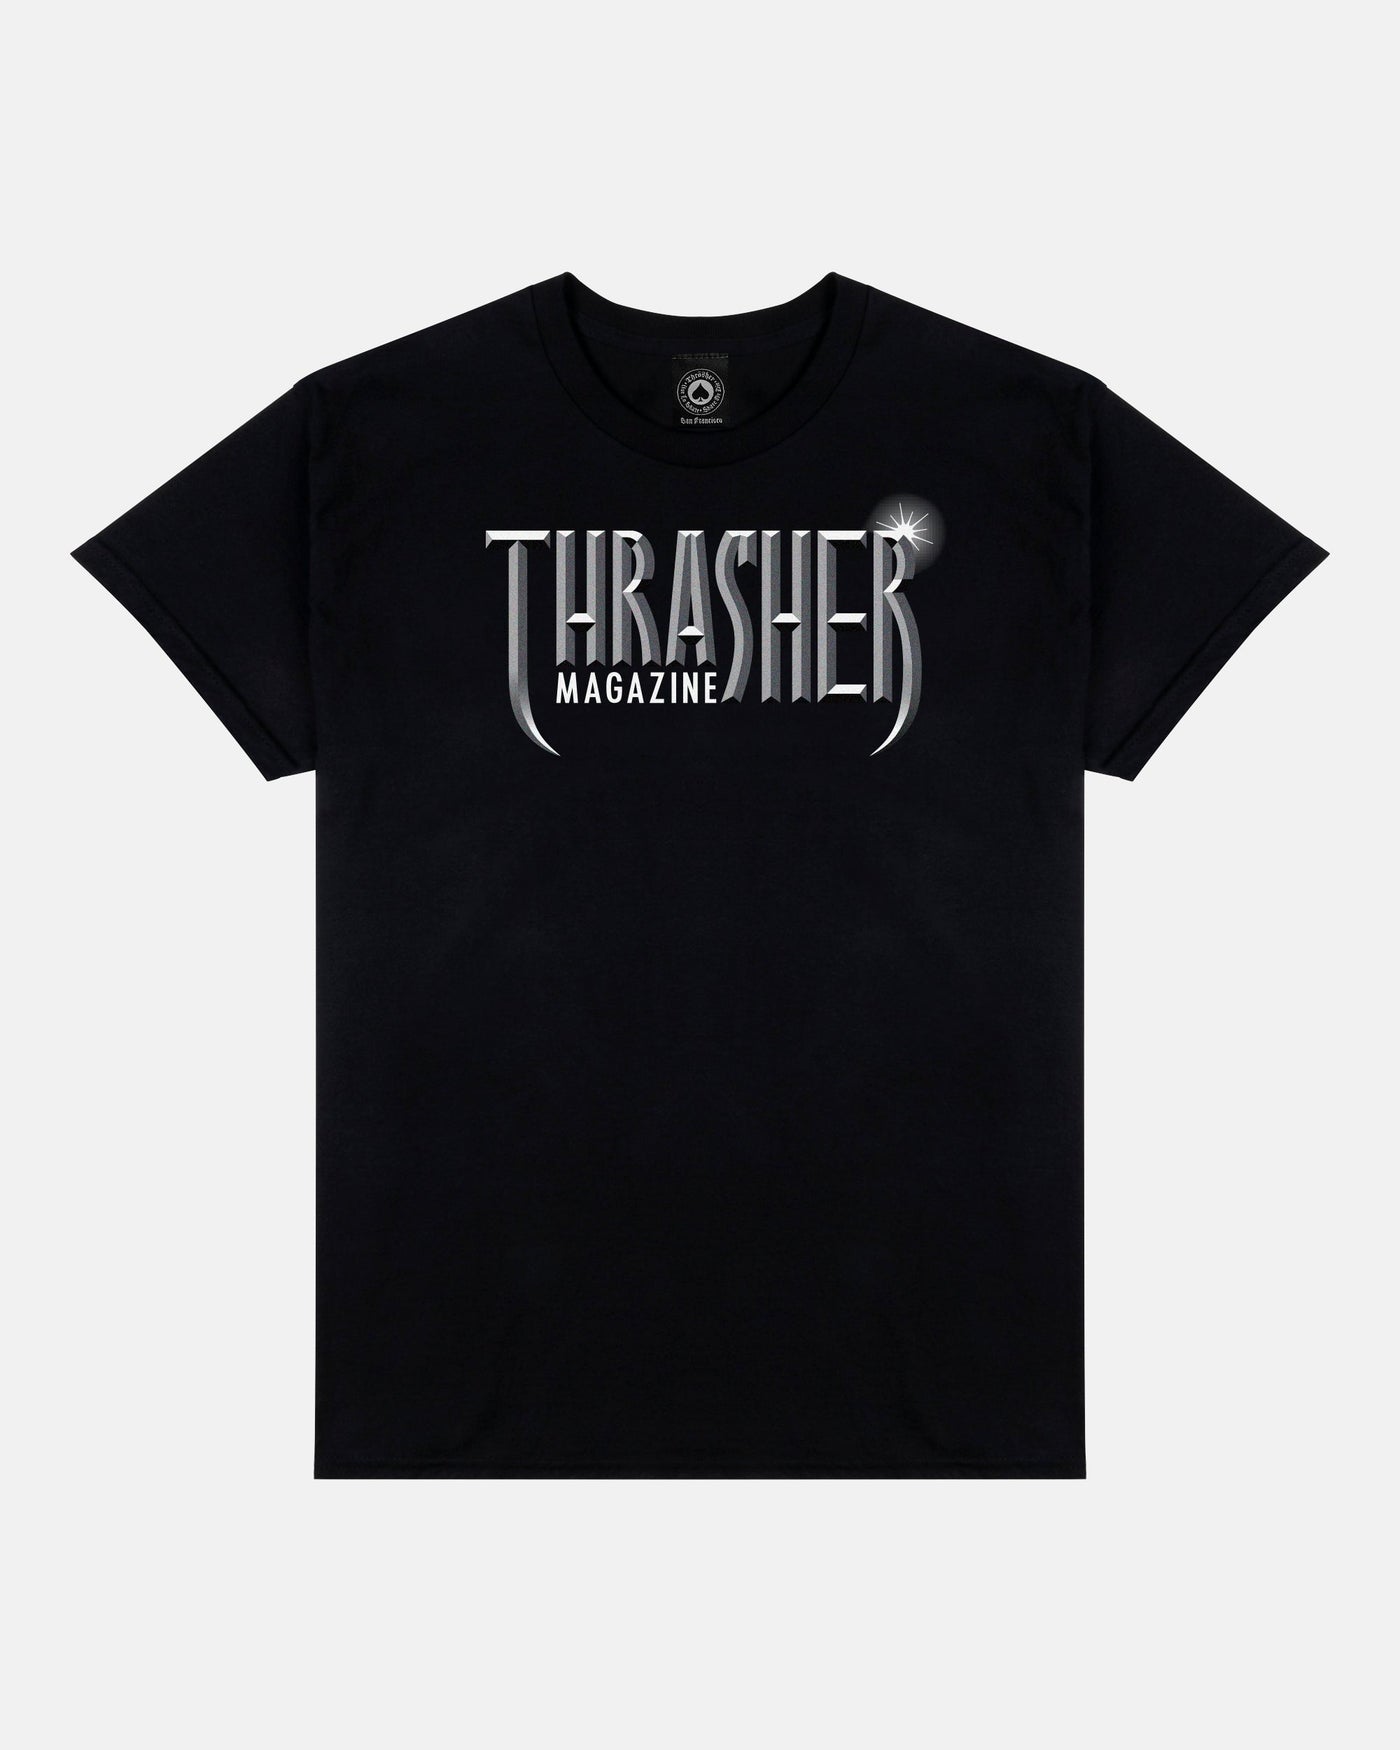 Thrasher - Polera Gothic Black - Lo Mejor De Thrasher - Solo Por $24990! Compra Ahora En Wallride Skateshop